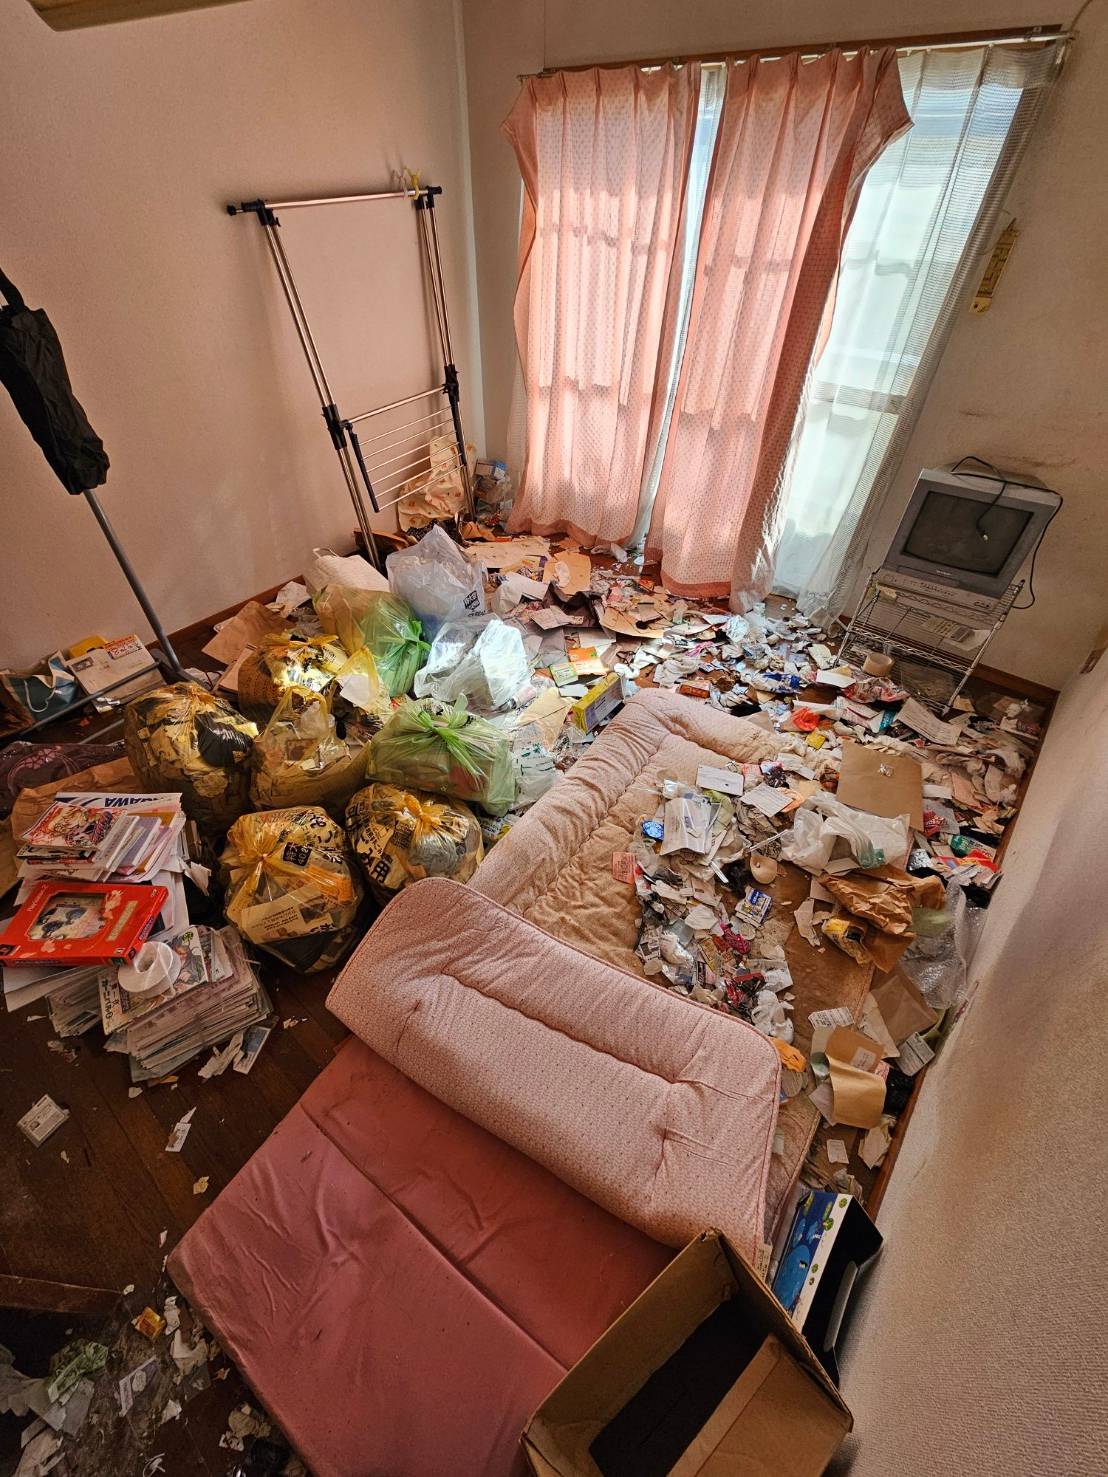 寝具、書籍、テレビ、生活ゴミなどの回収前の状態